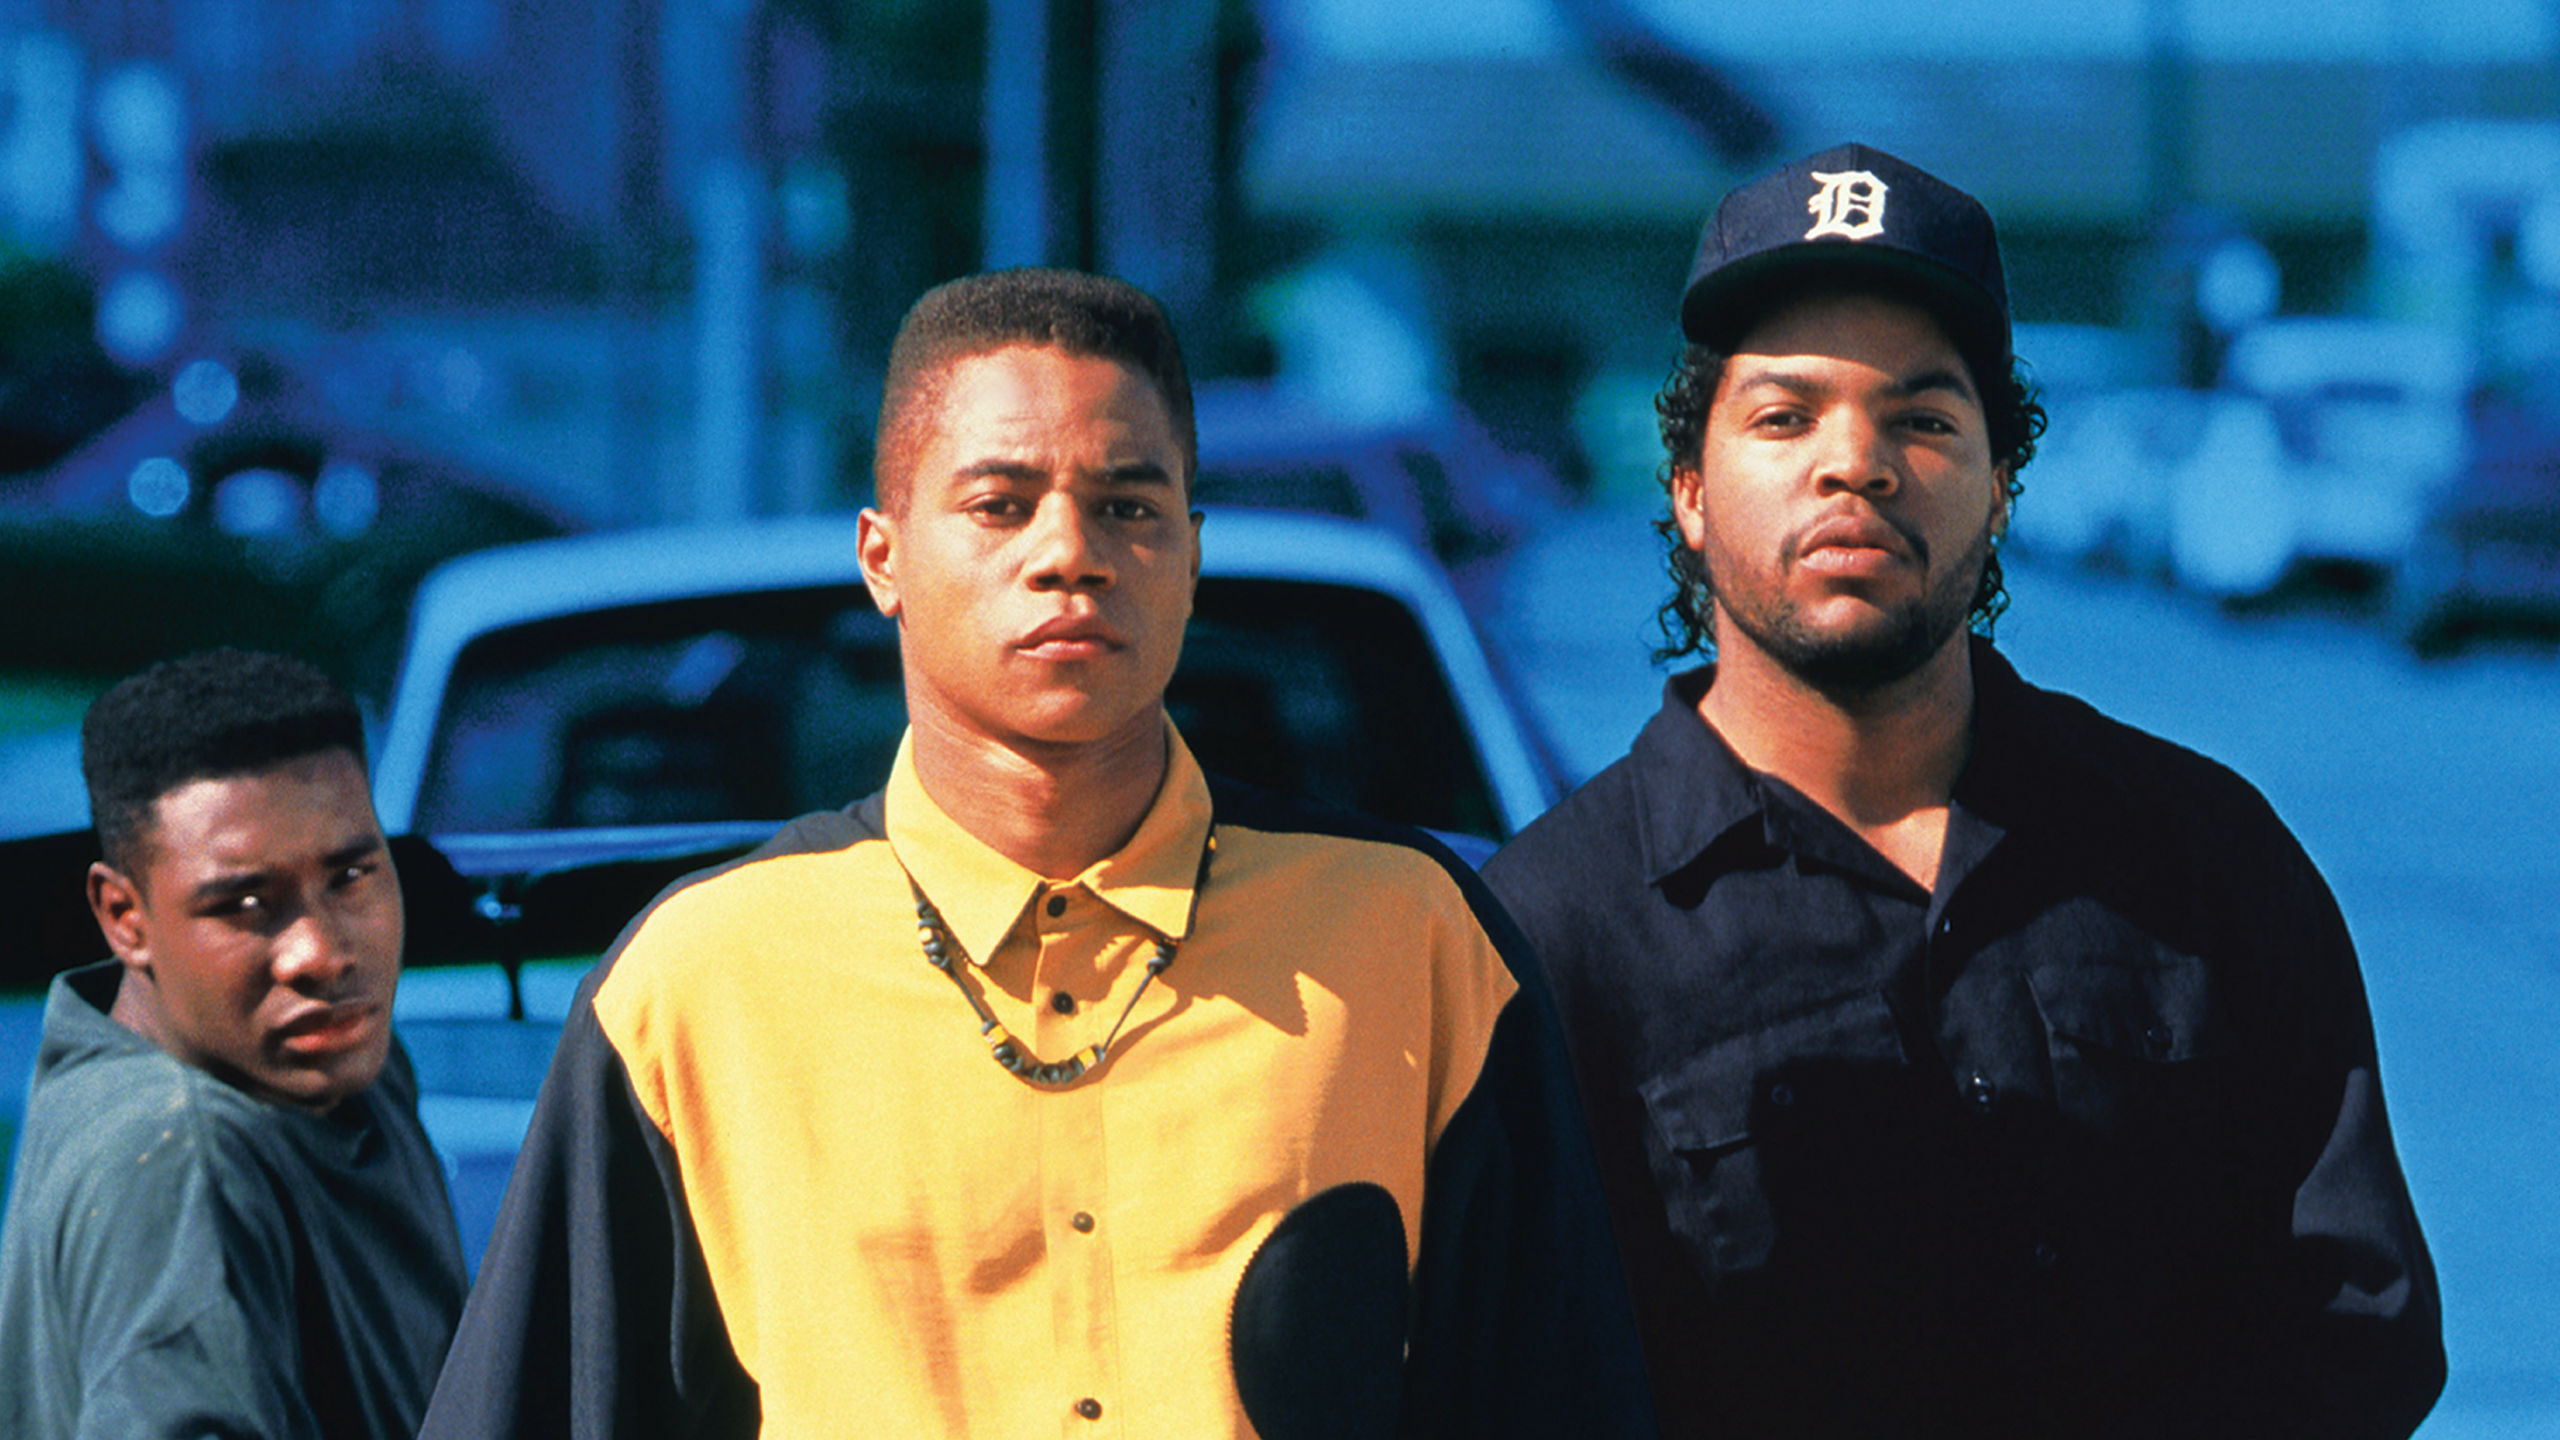 Ребята по соседству. Айс Кьюб ребята с улицы. Ребята с улицы (1991) Boyz n the Hood.